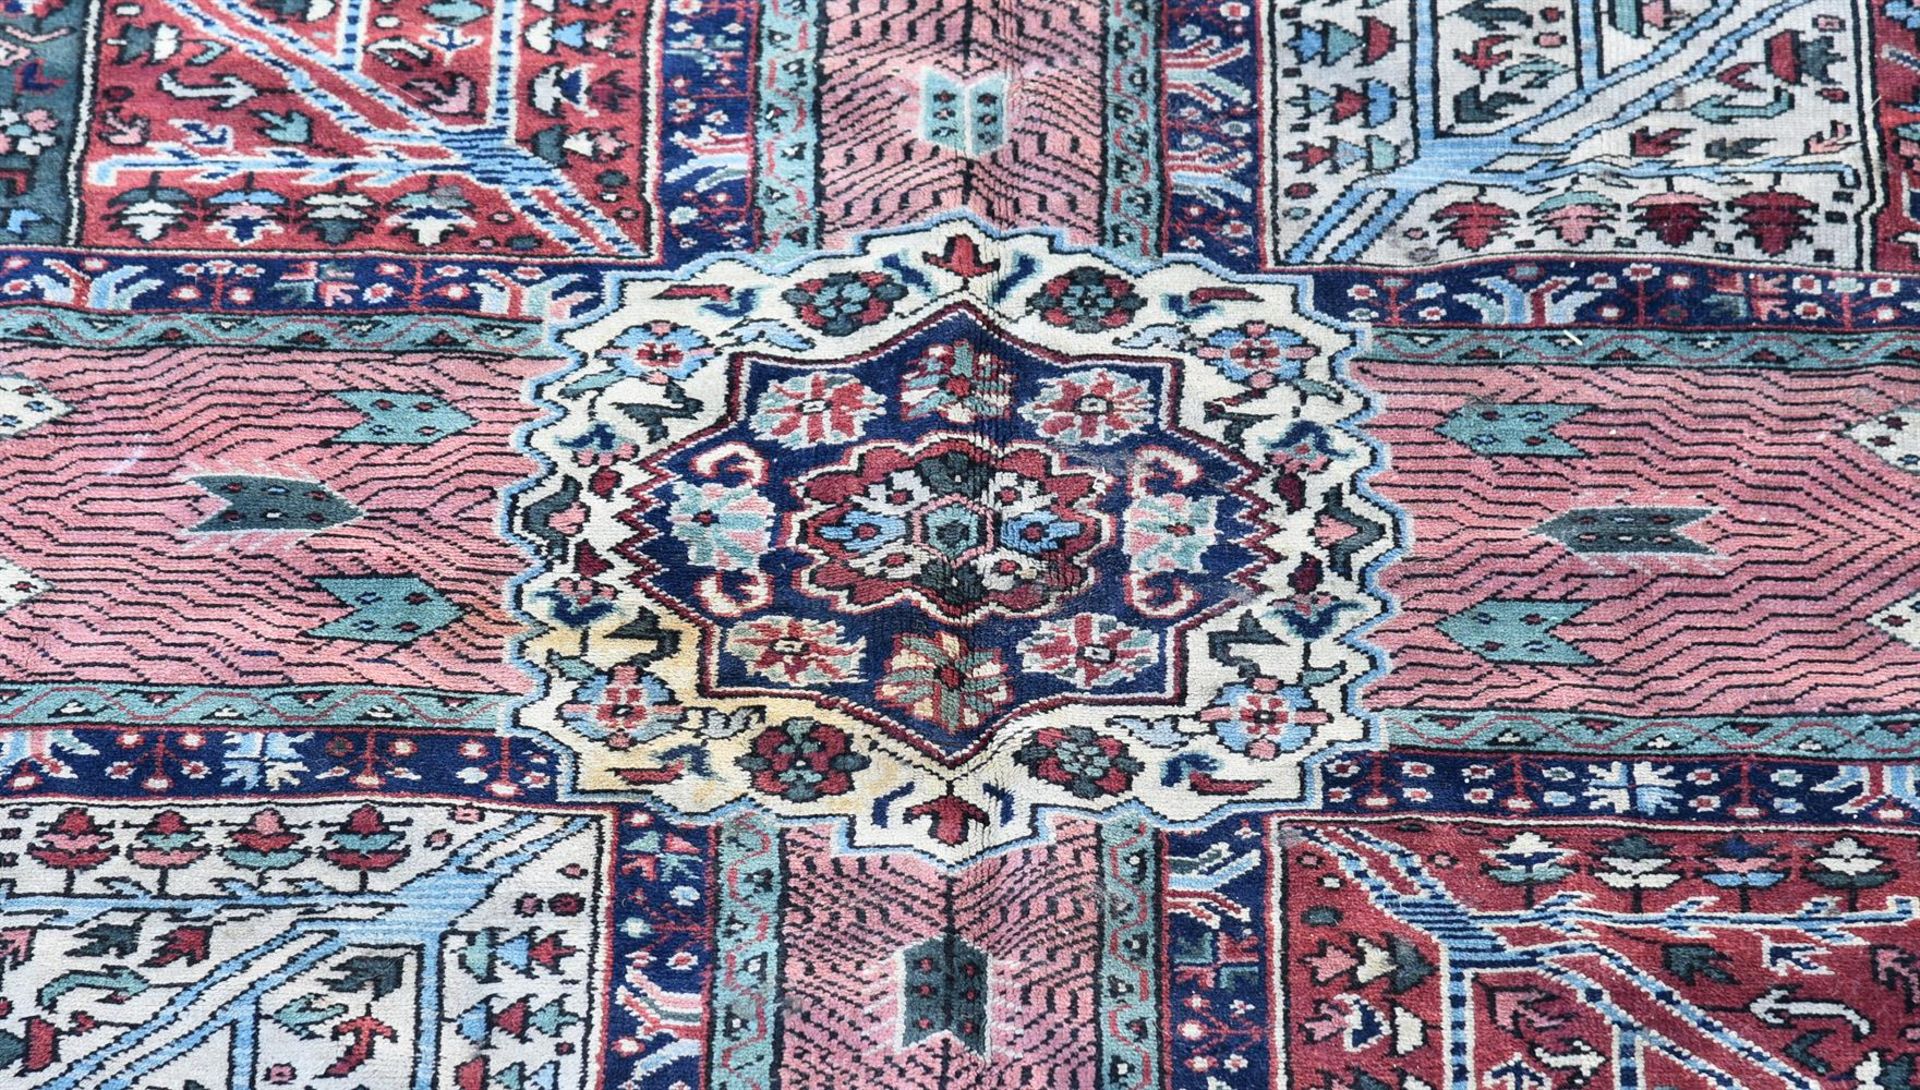 A TURKISH CARPET - Image 3 of 3